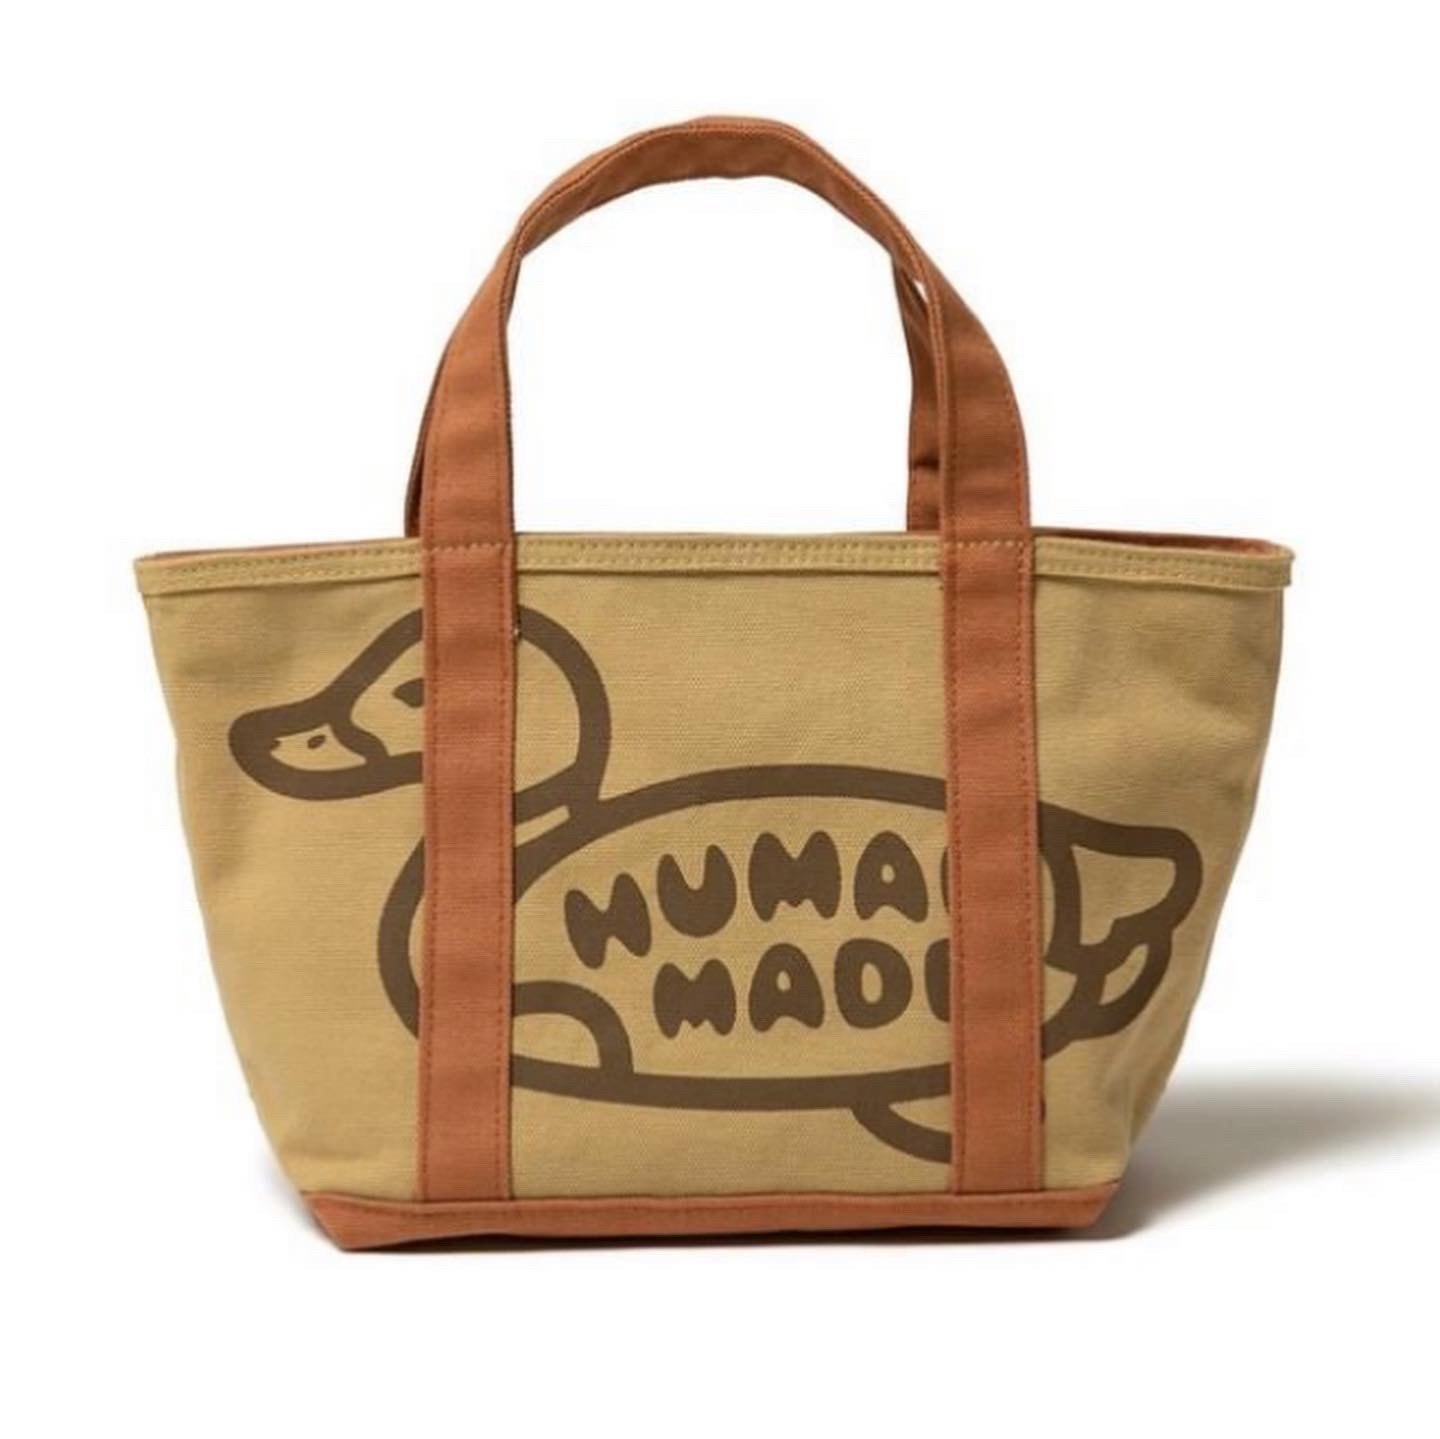 Human Made Color Tote Bag (Small)